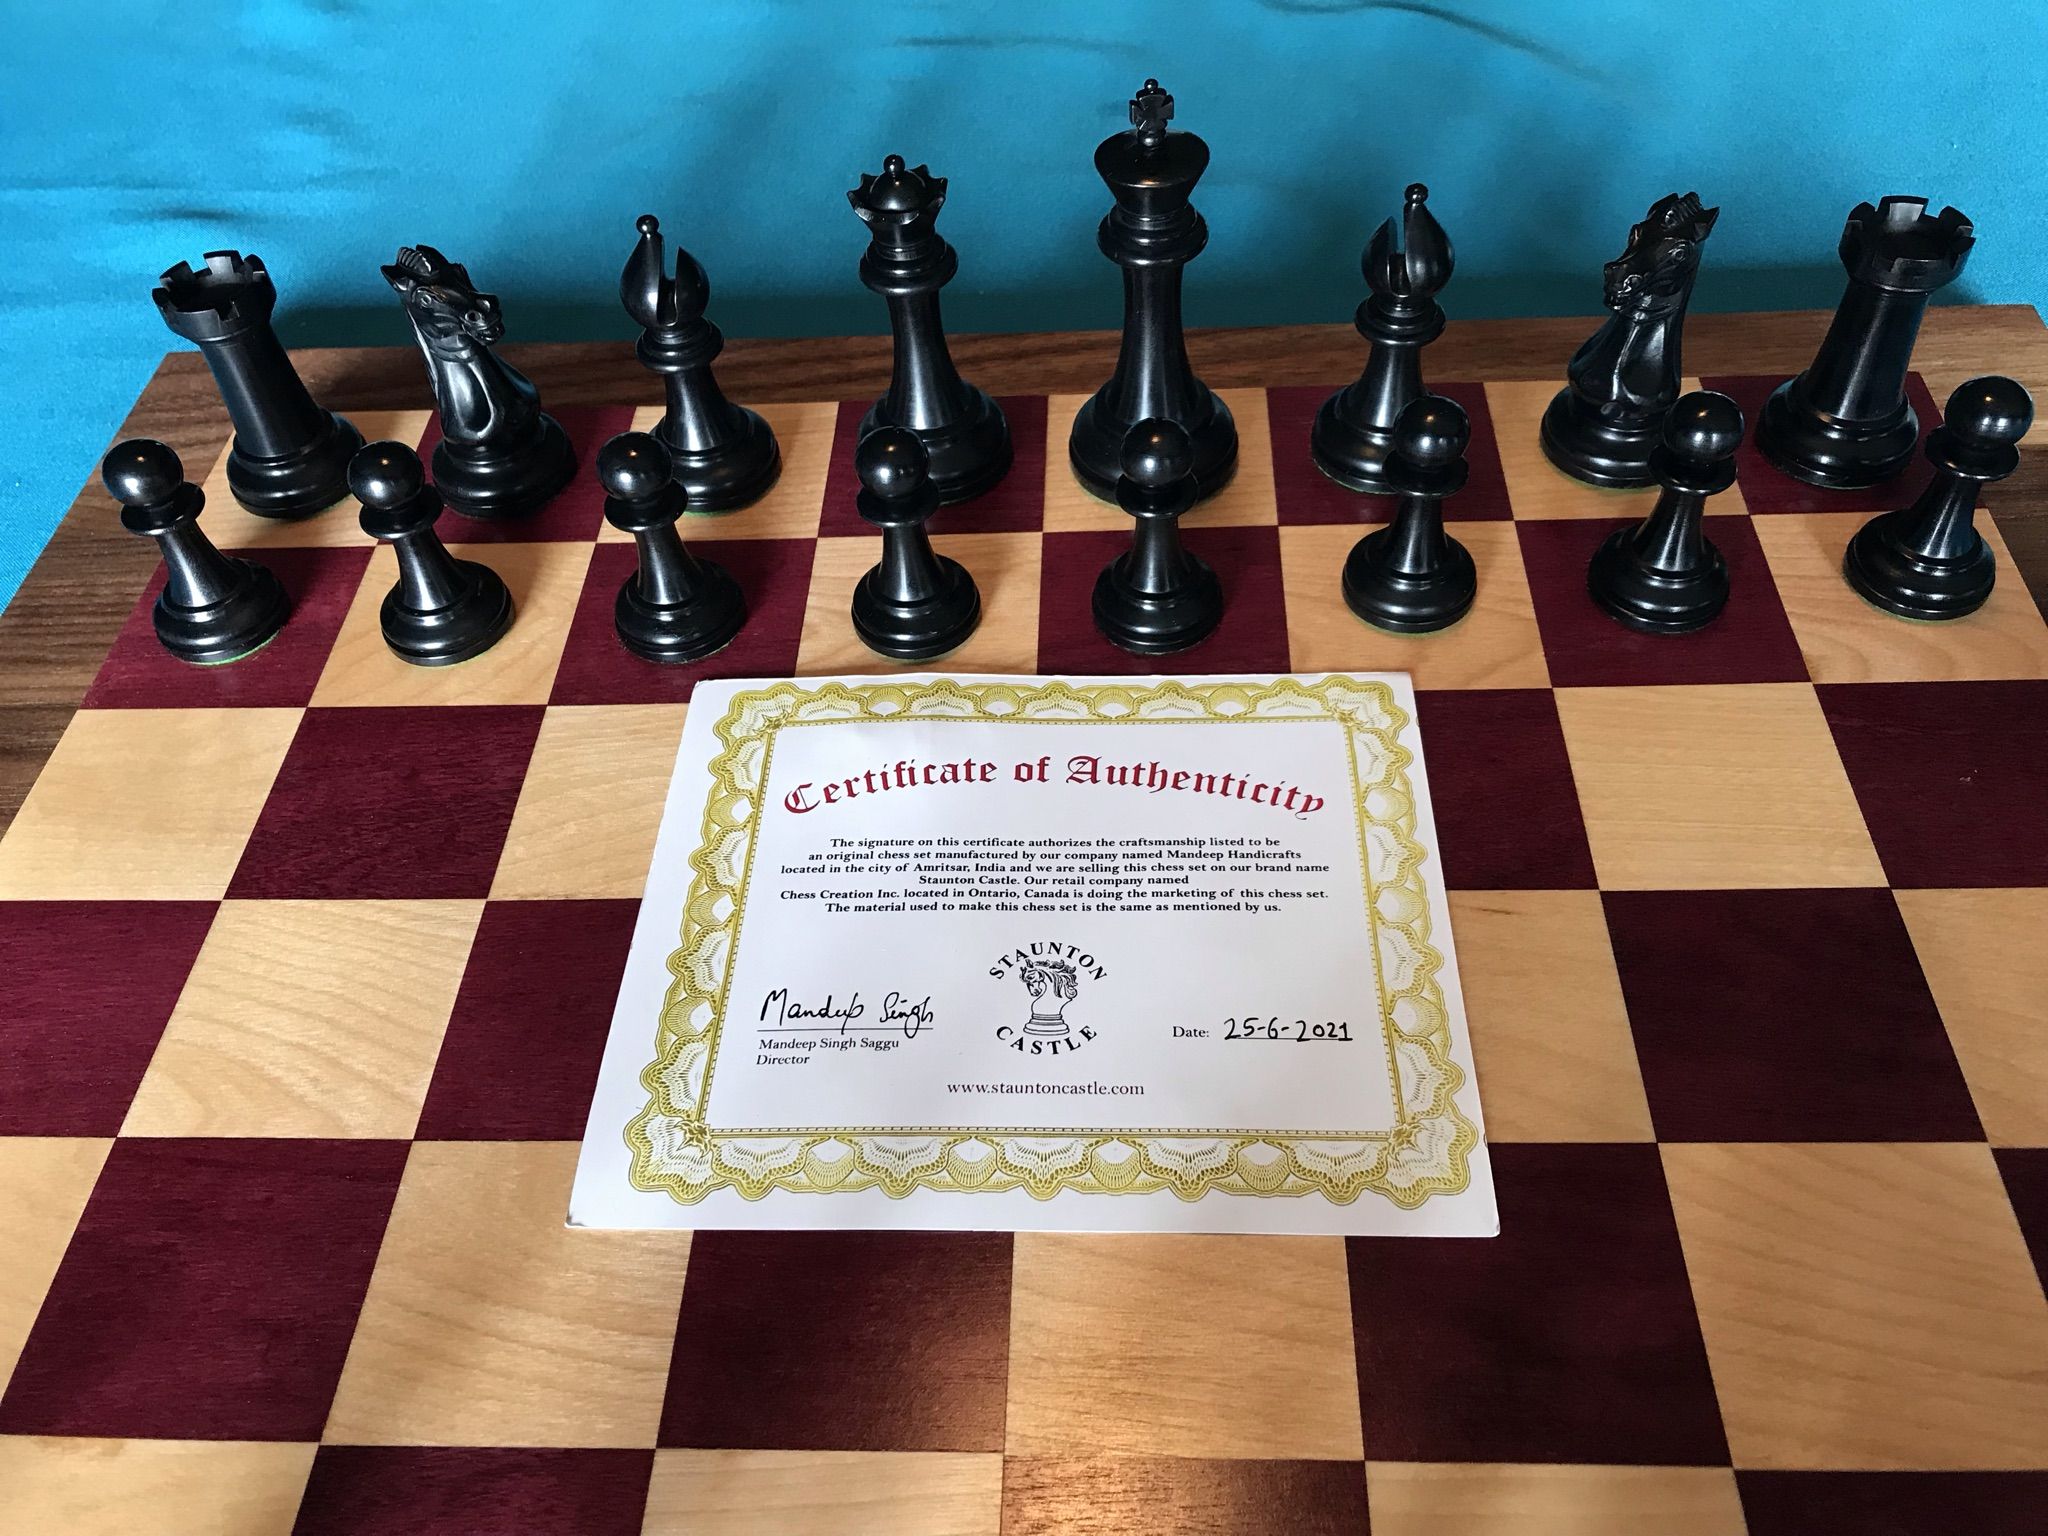 Chess Skills: 2021